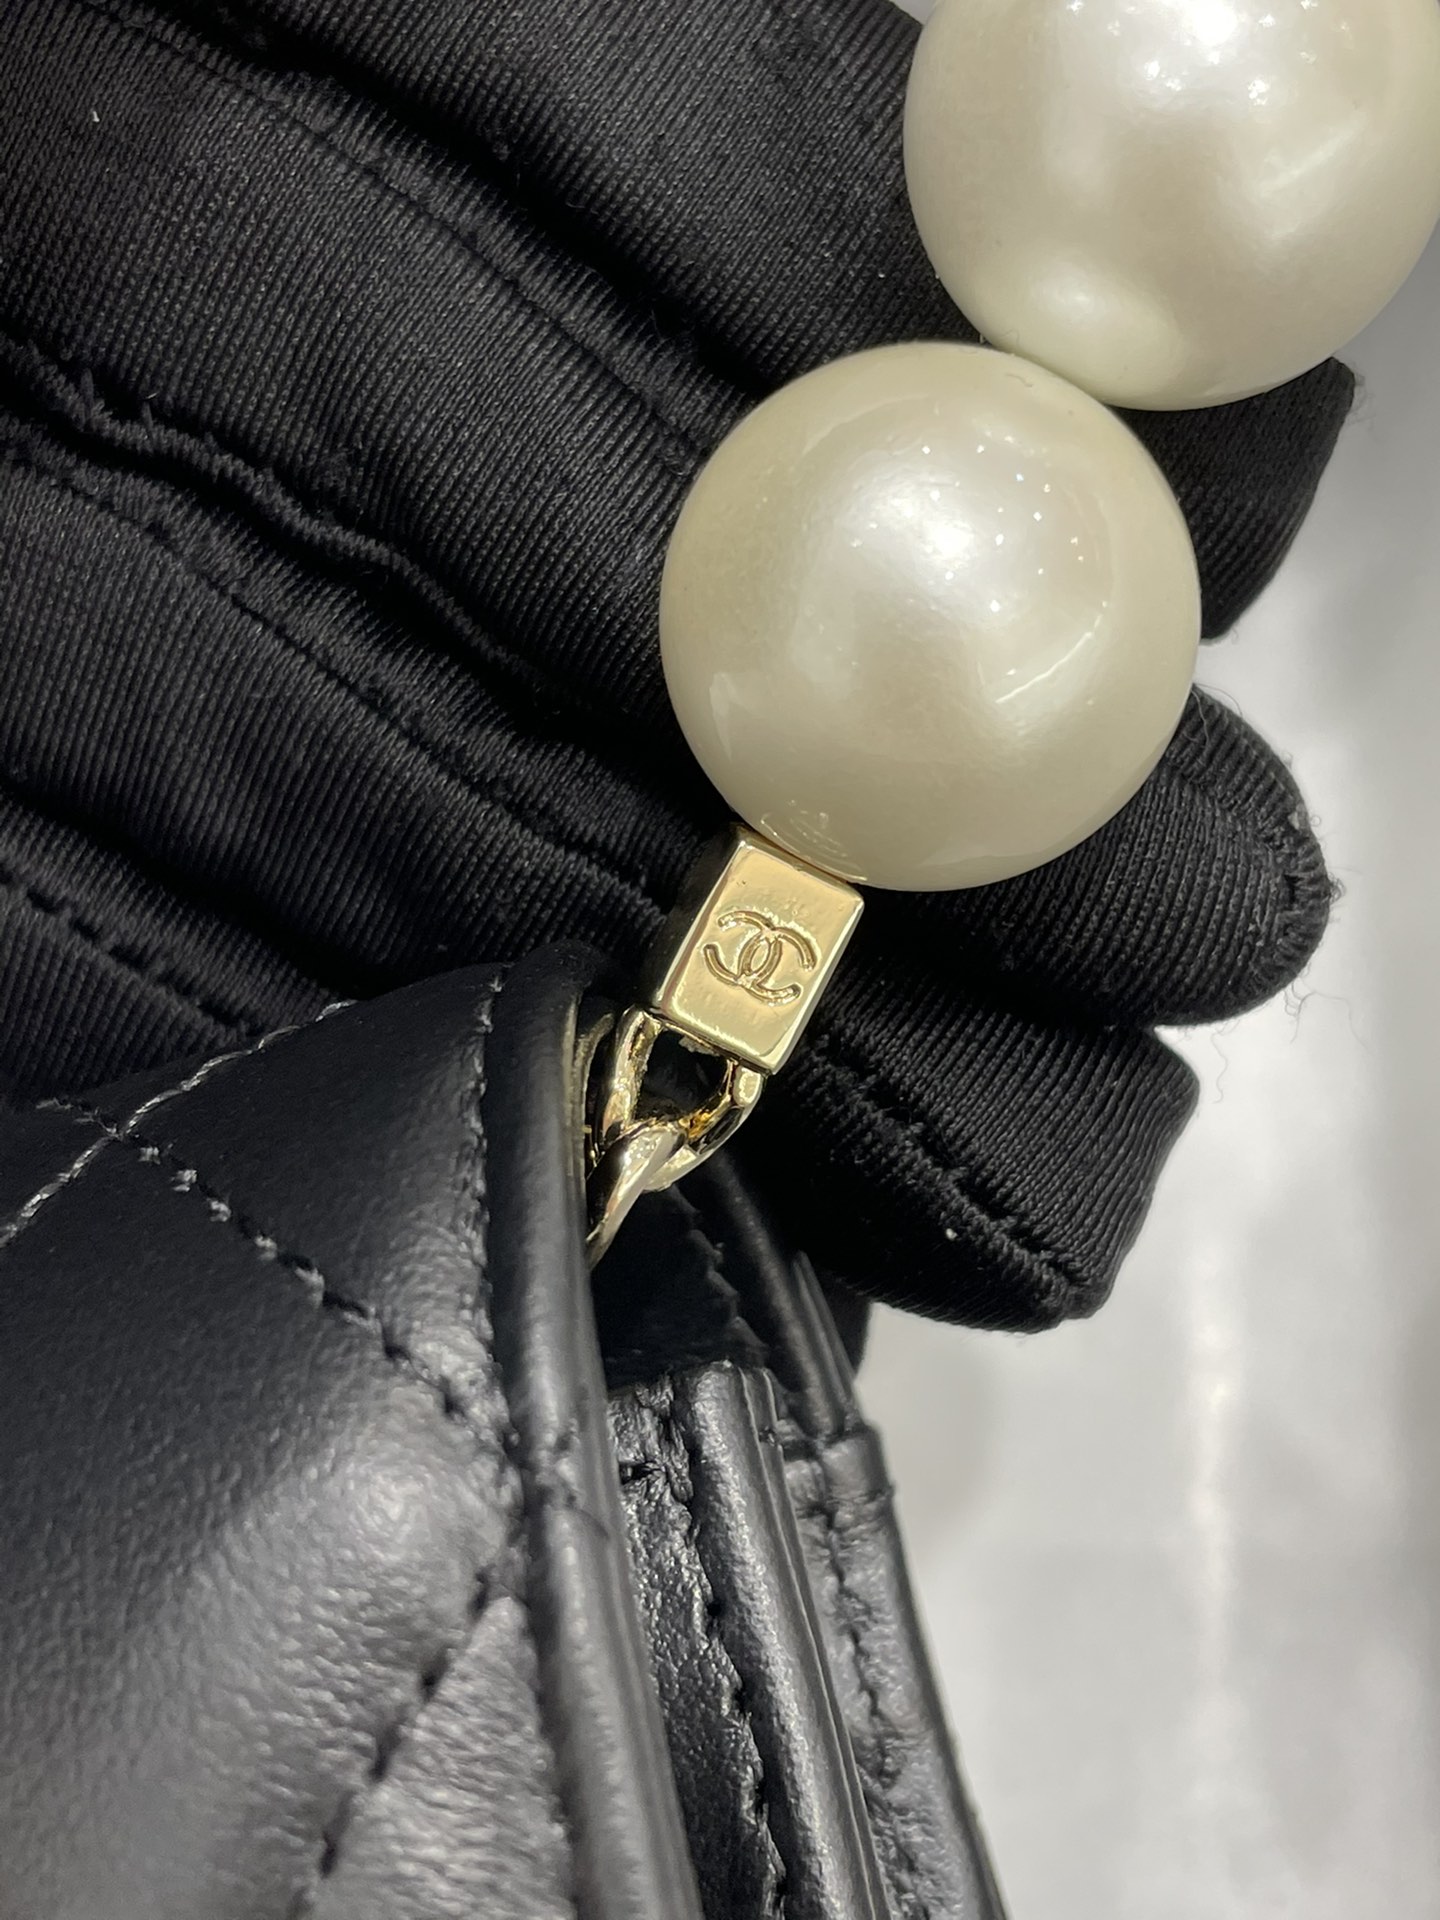 Chanel woc 珍珠发财包 小菱格珍珠链条包 大颗珍珠做成肩带 菱格纹 19cm